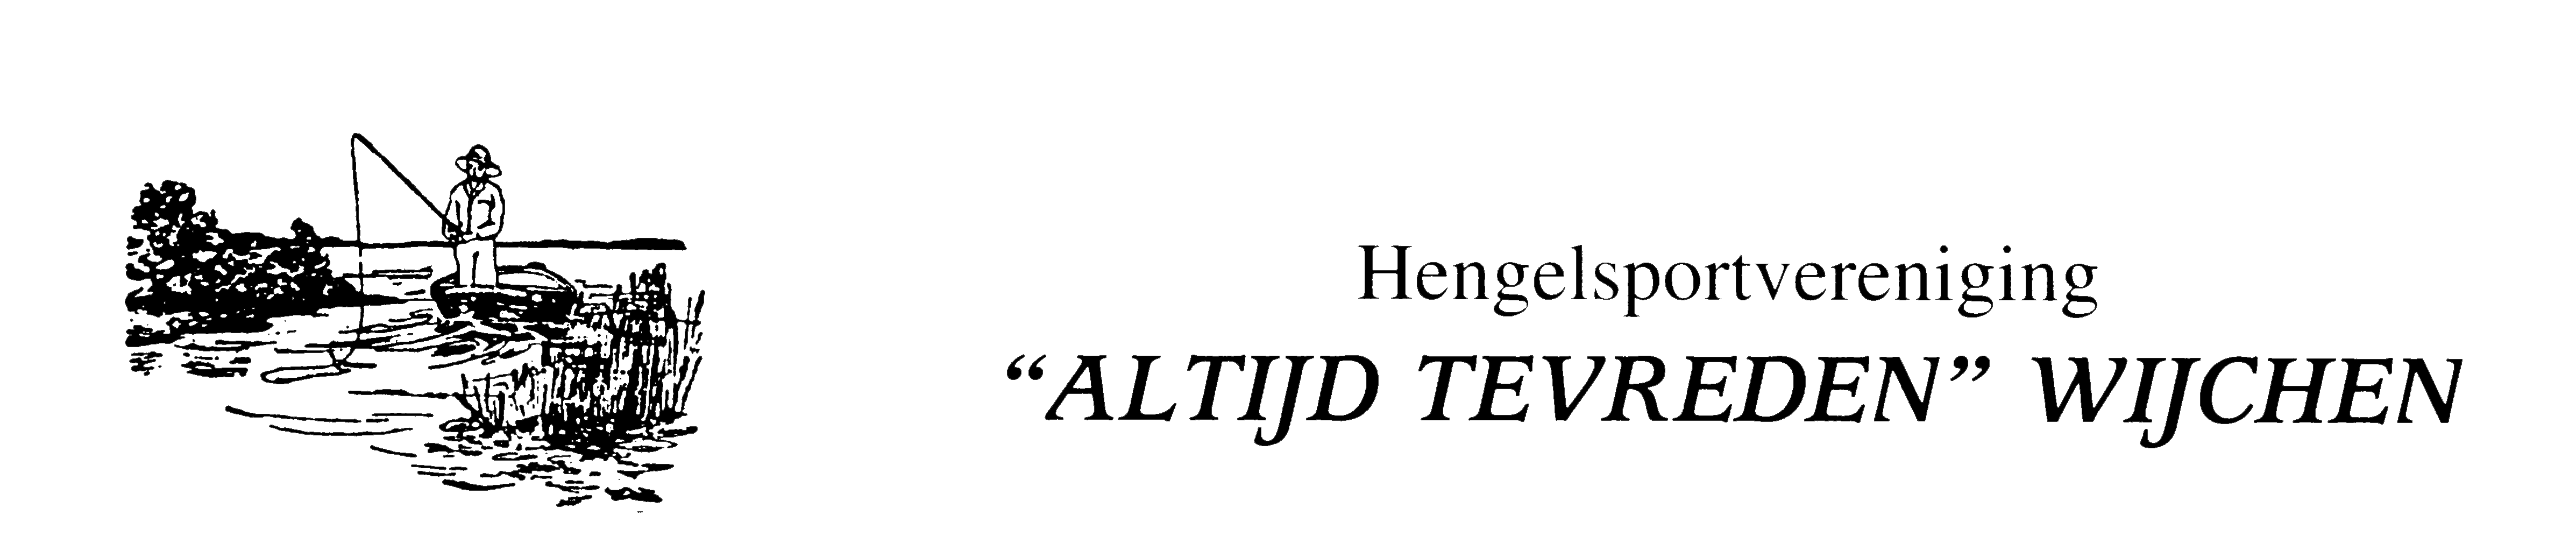 Hengelsportvereniging Altijd Tevreden Logo